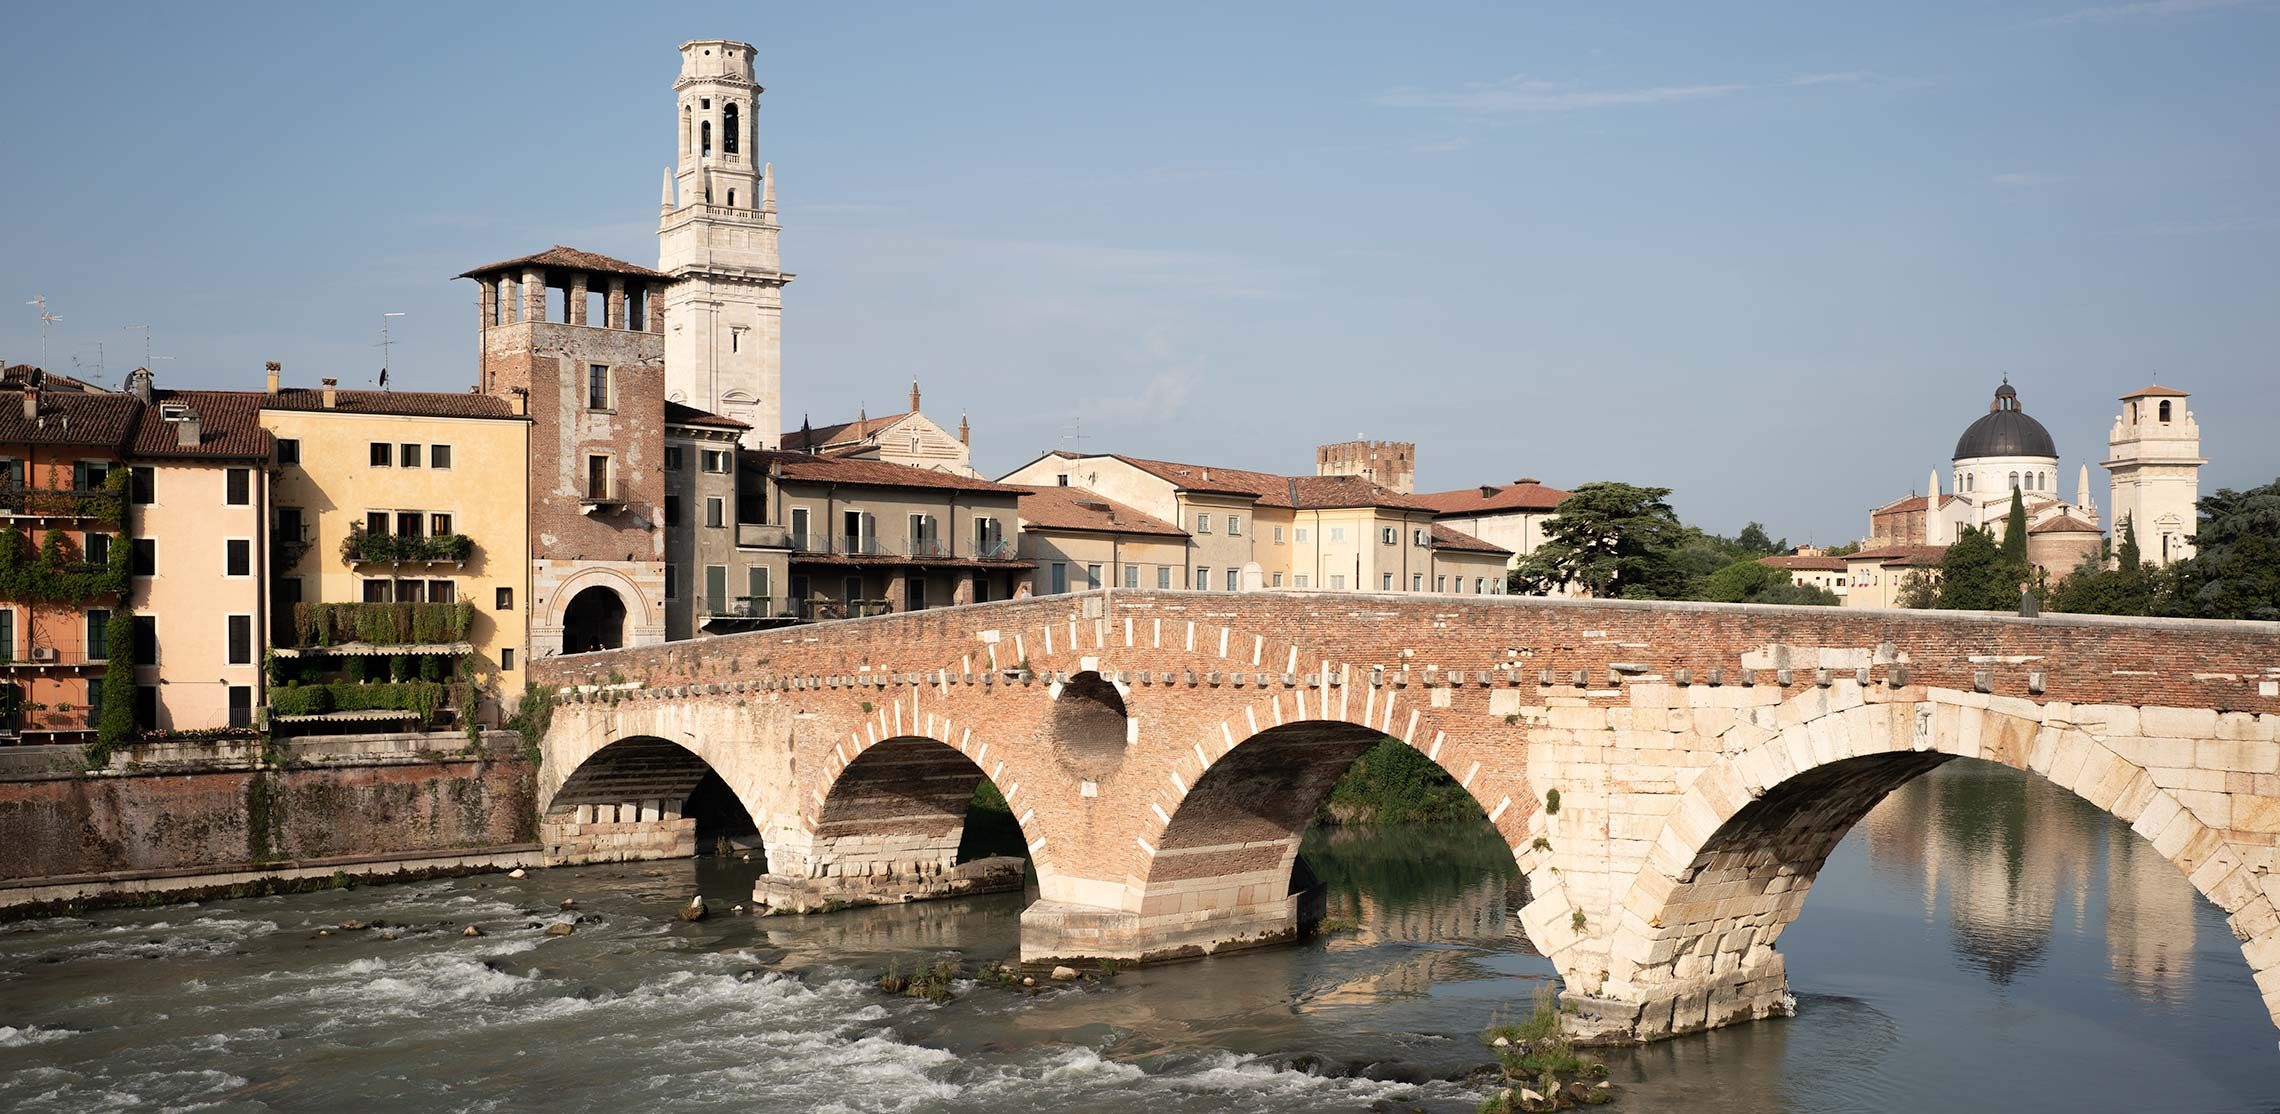 Eine römische Brücke führt über den Fluss Etsch direkt in die Altstadt von Verona.